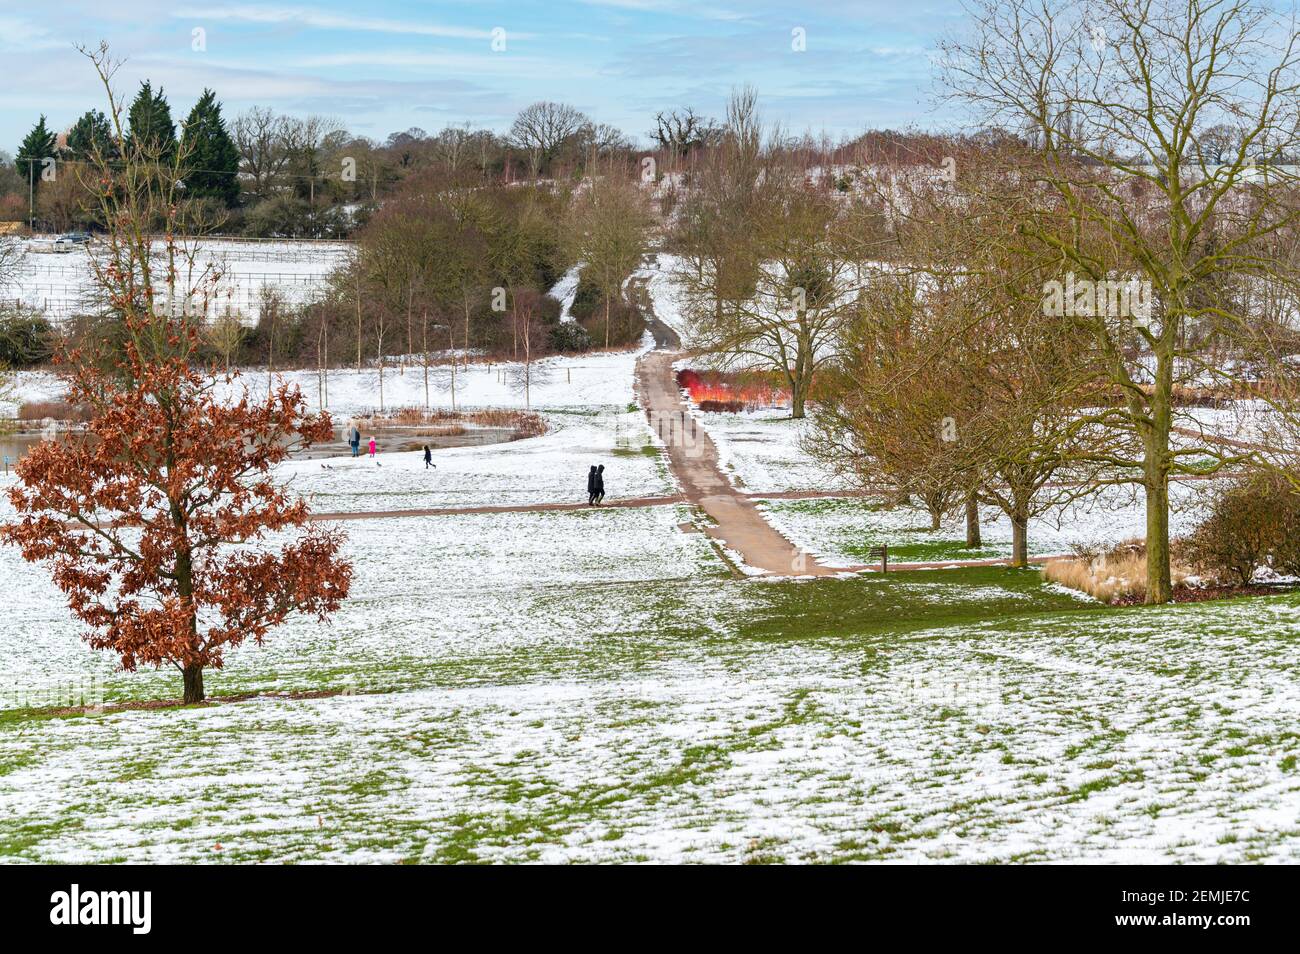 Godetevi le passeggiate invernali al RHS Hyde Hall, Essex. Neve tutto intorno ma sentieri chiari per passeggiate sicure. Foto Stock